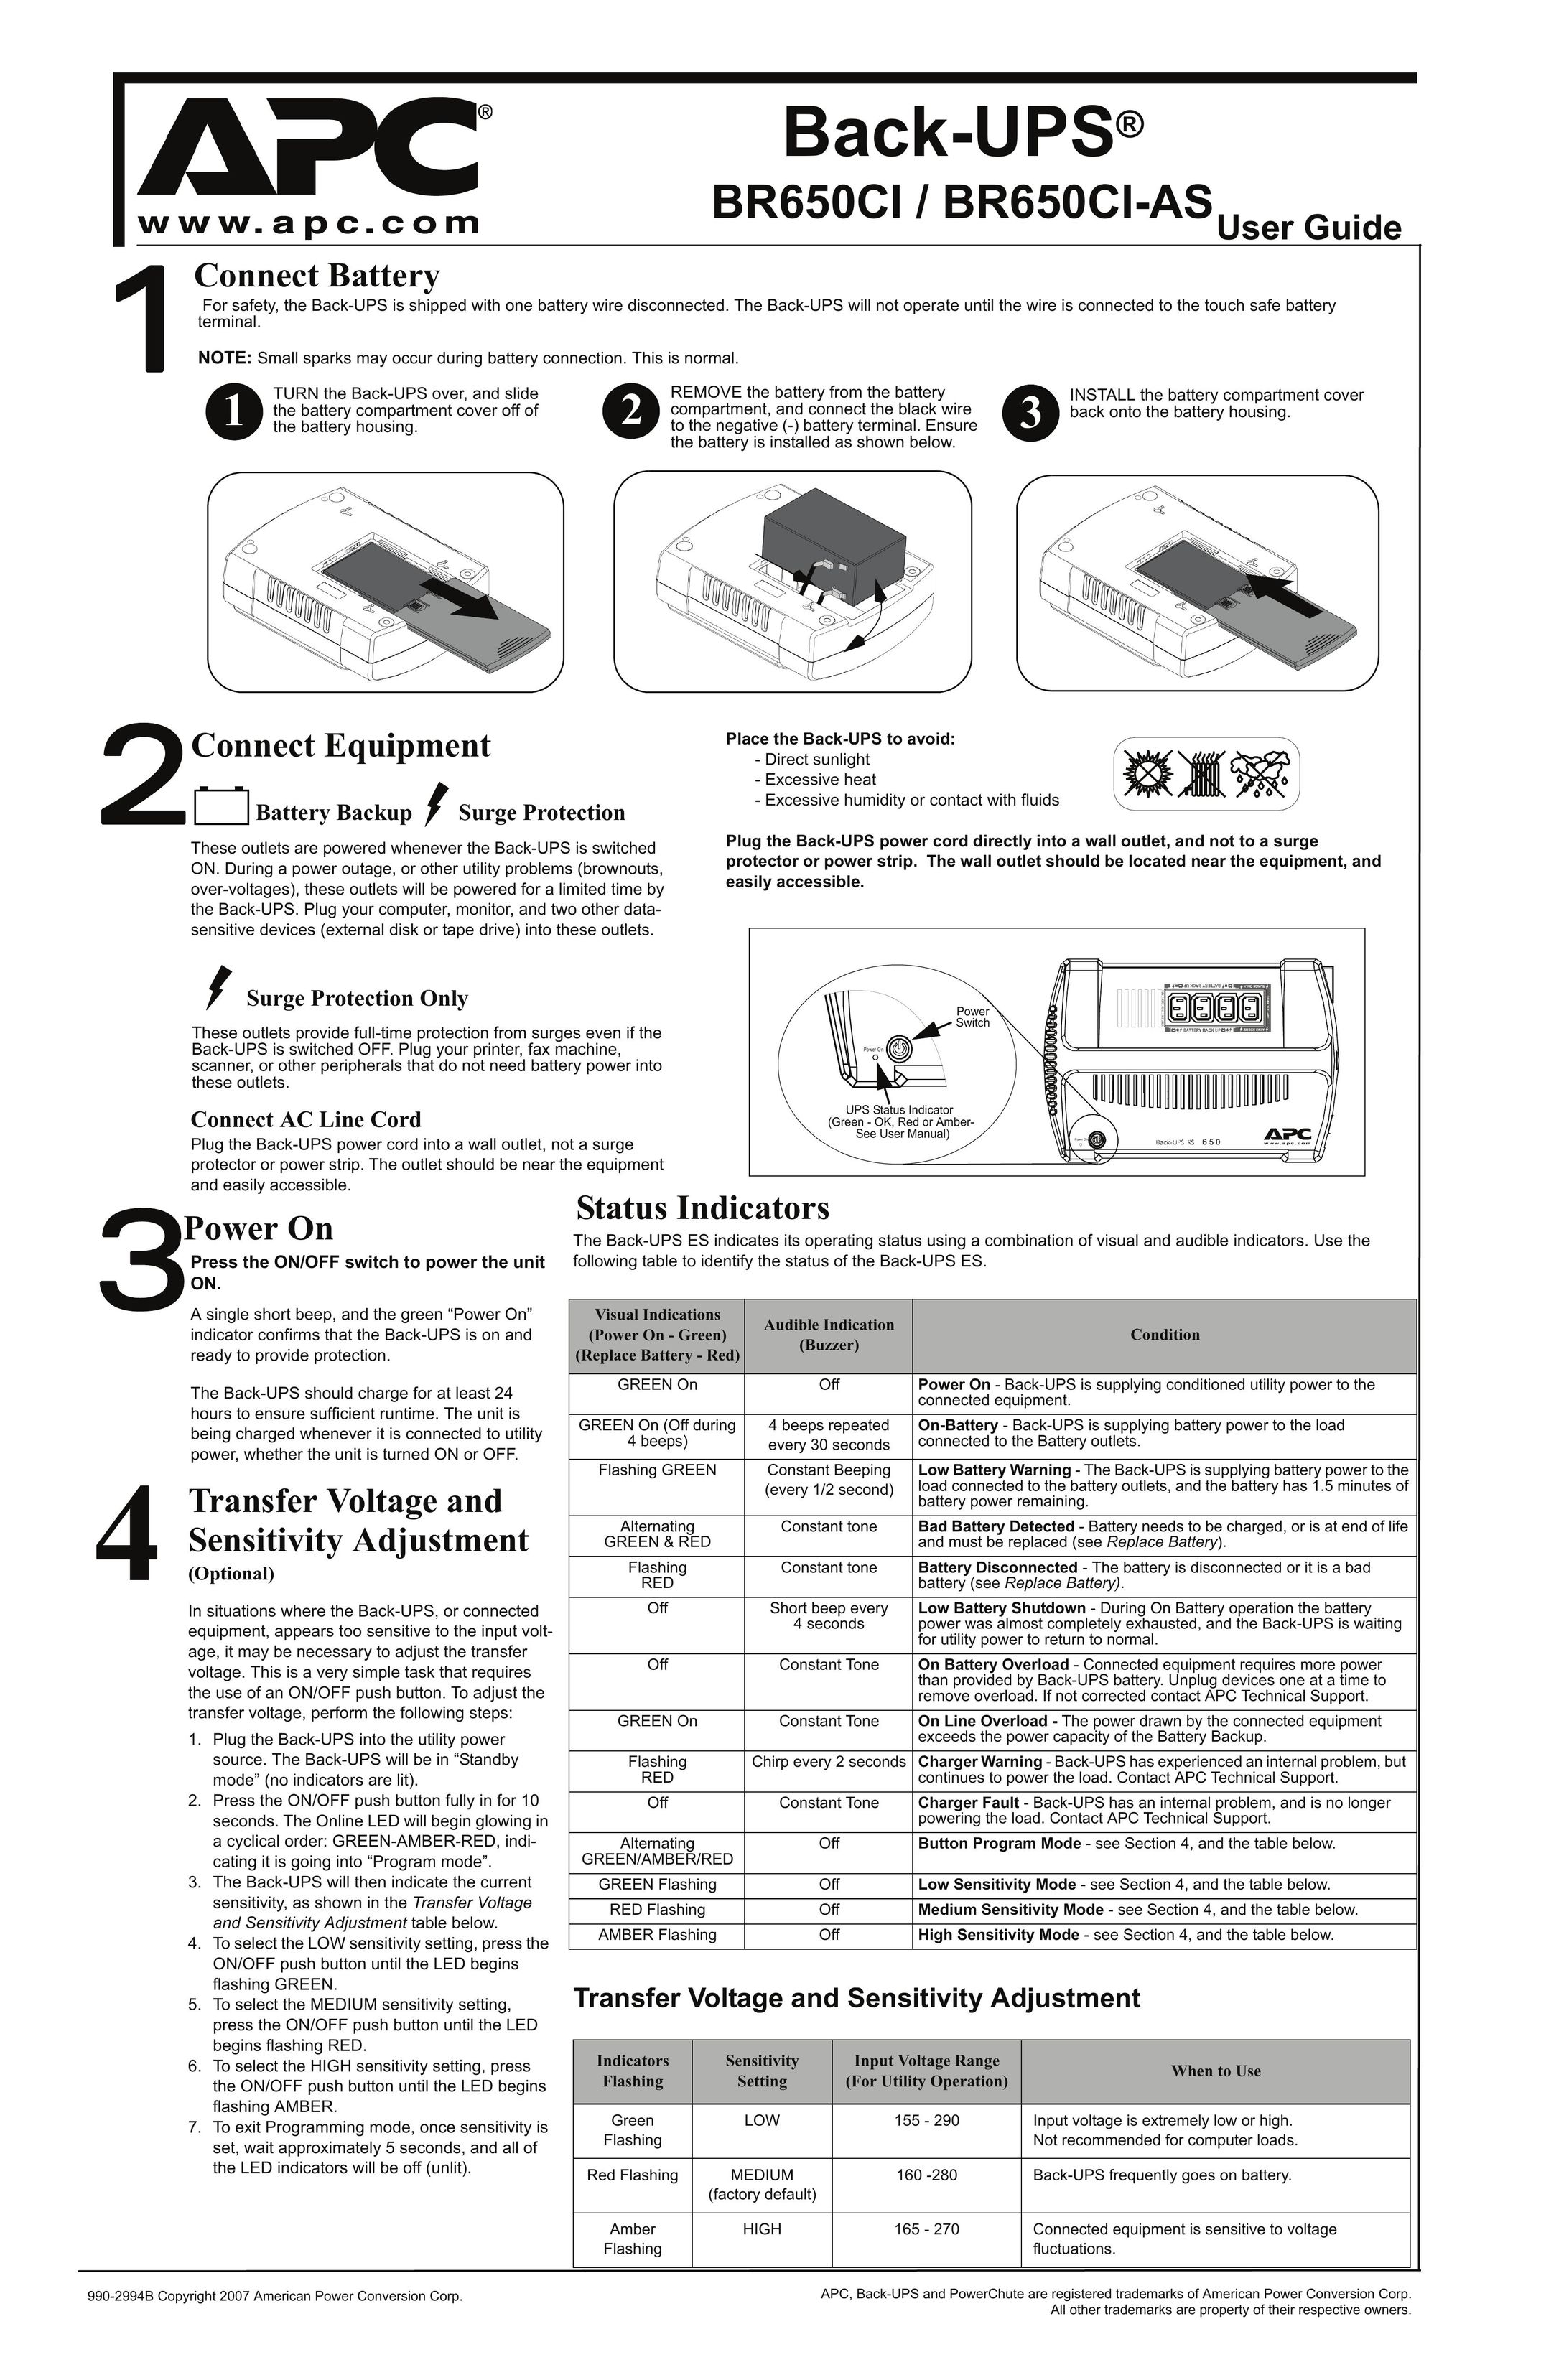 APC BR650CI-AS Saw User Manual